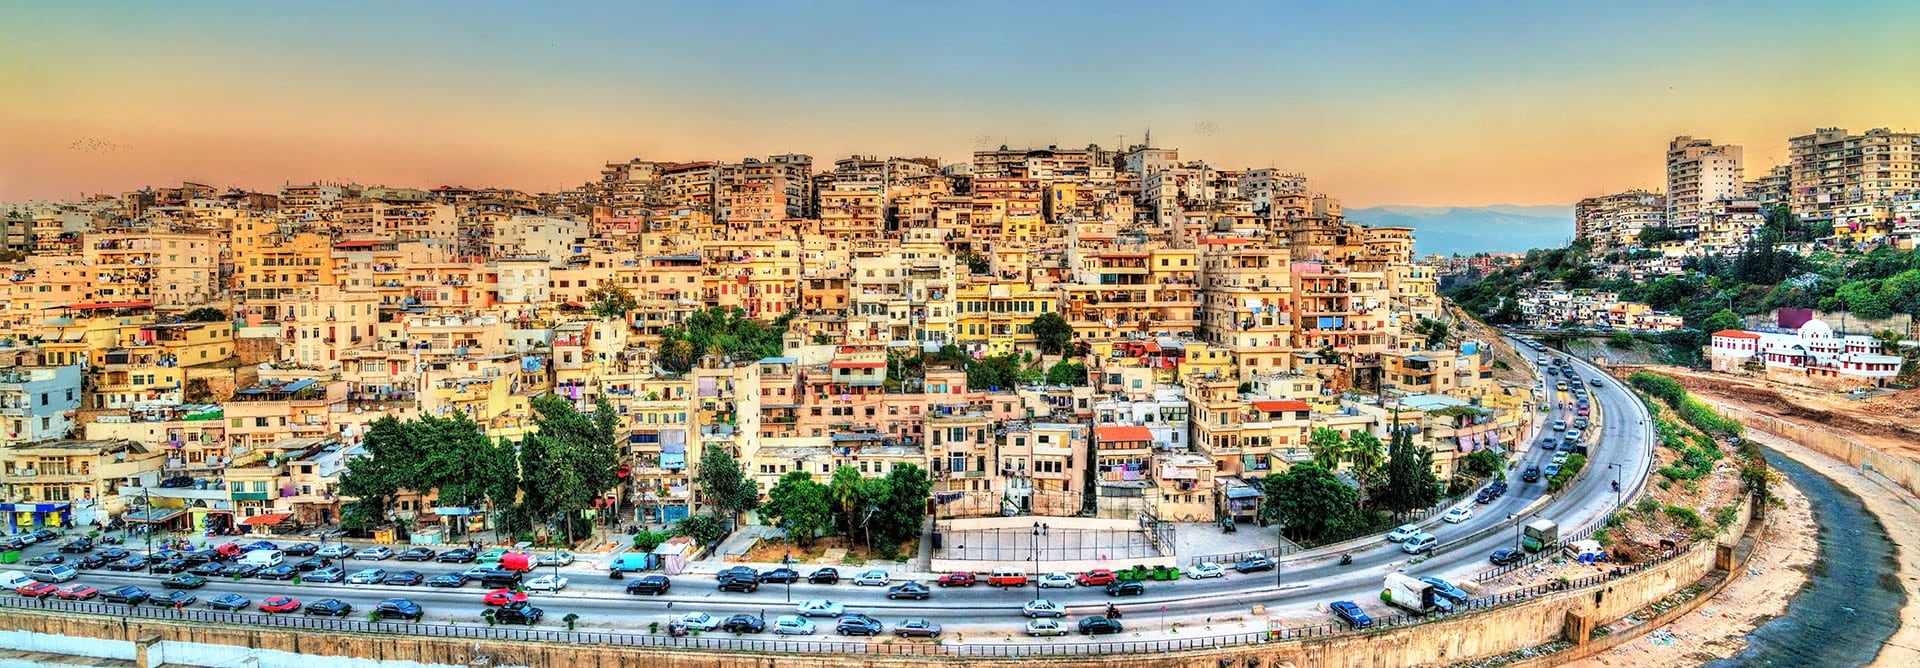 Trípoli es la capital y la ciudad más poblada de Libia. Su nombre, etimológicamente, procede del griego Tri polis: tres ciudades